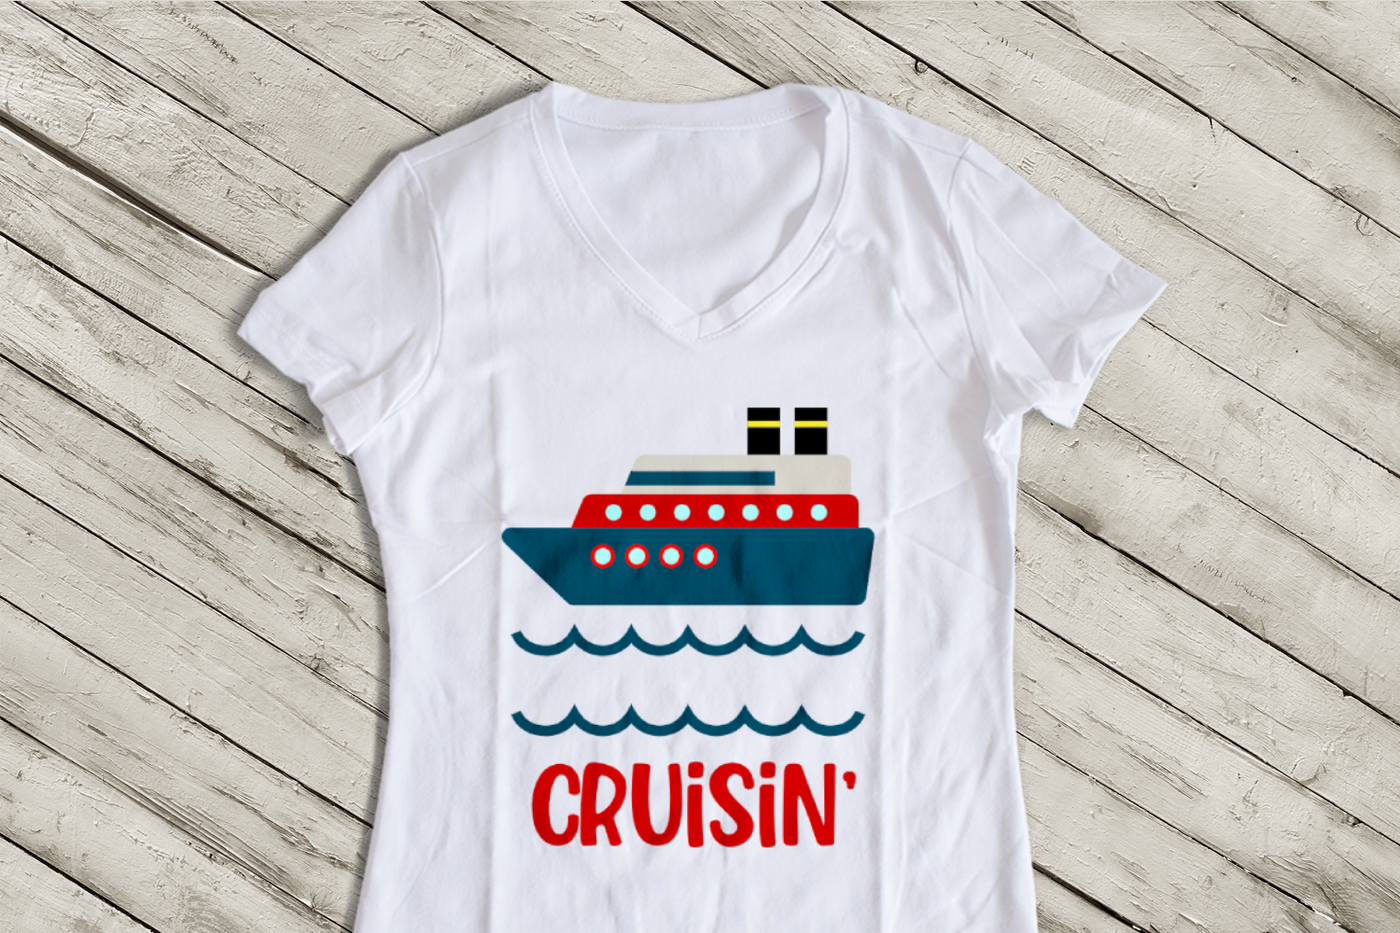 Cruise ship design